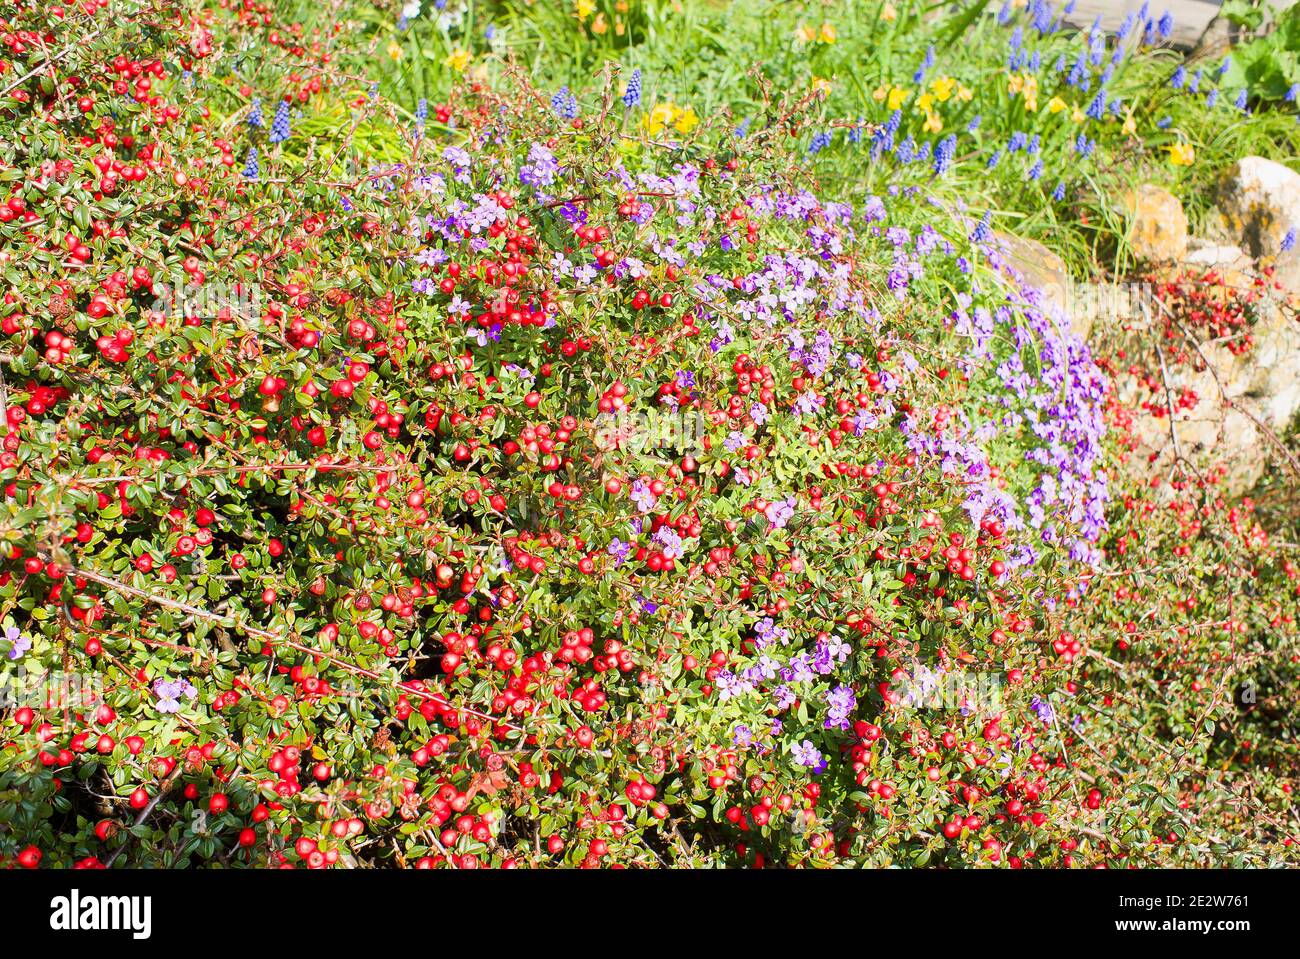 Mehrjährige Pflanzen kleiden eine Gartenwand in einem englischen Garten mit roten Beeren auf Cotoneaster; Aubretia und Frühlingszwiebeln in Blüte Stockfoto